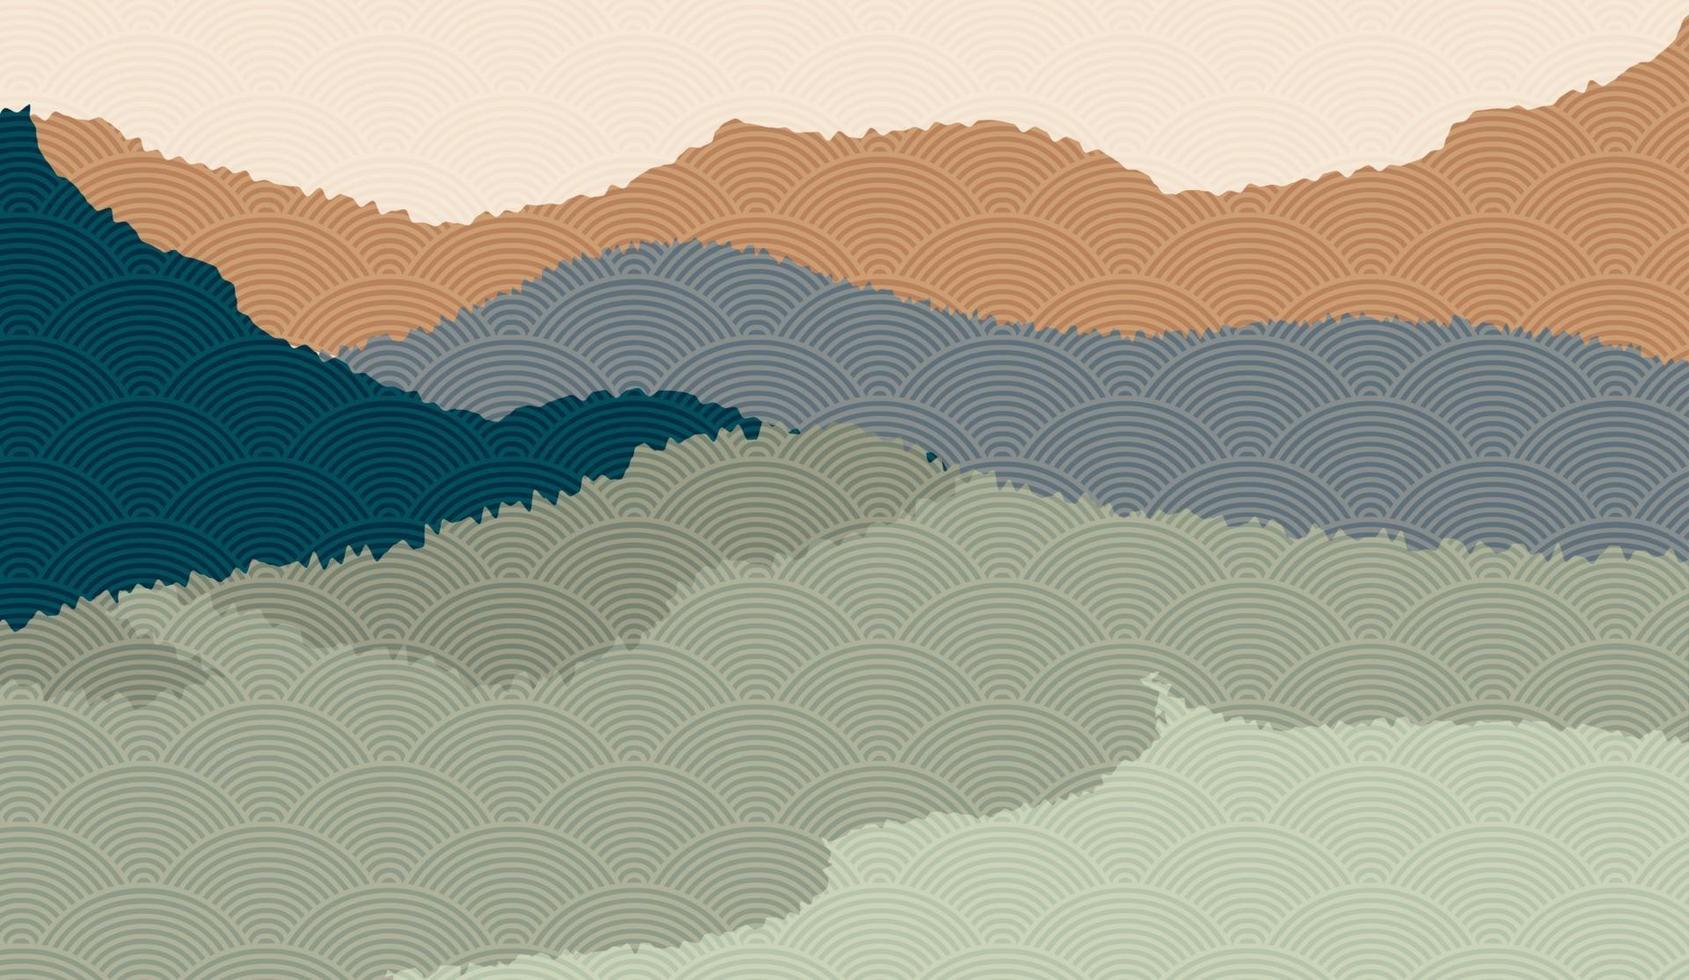 Landschaftshintergrund mit Gebirgslandschaft verziert mit japanischem Wellenmuster. Vektorillustration des Reise- und Abenteuerthemas mit abstrakter Naturlandschaft vektor